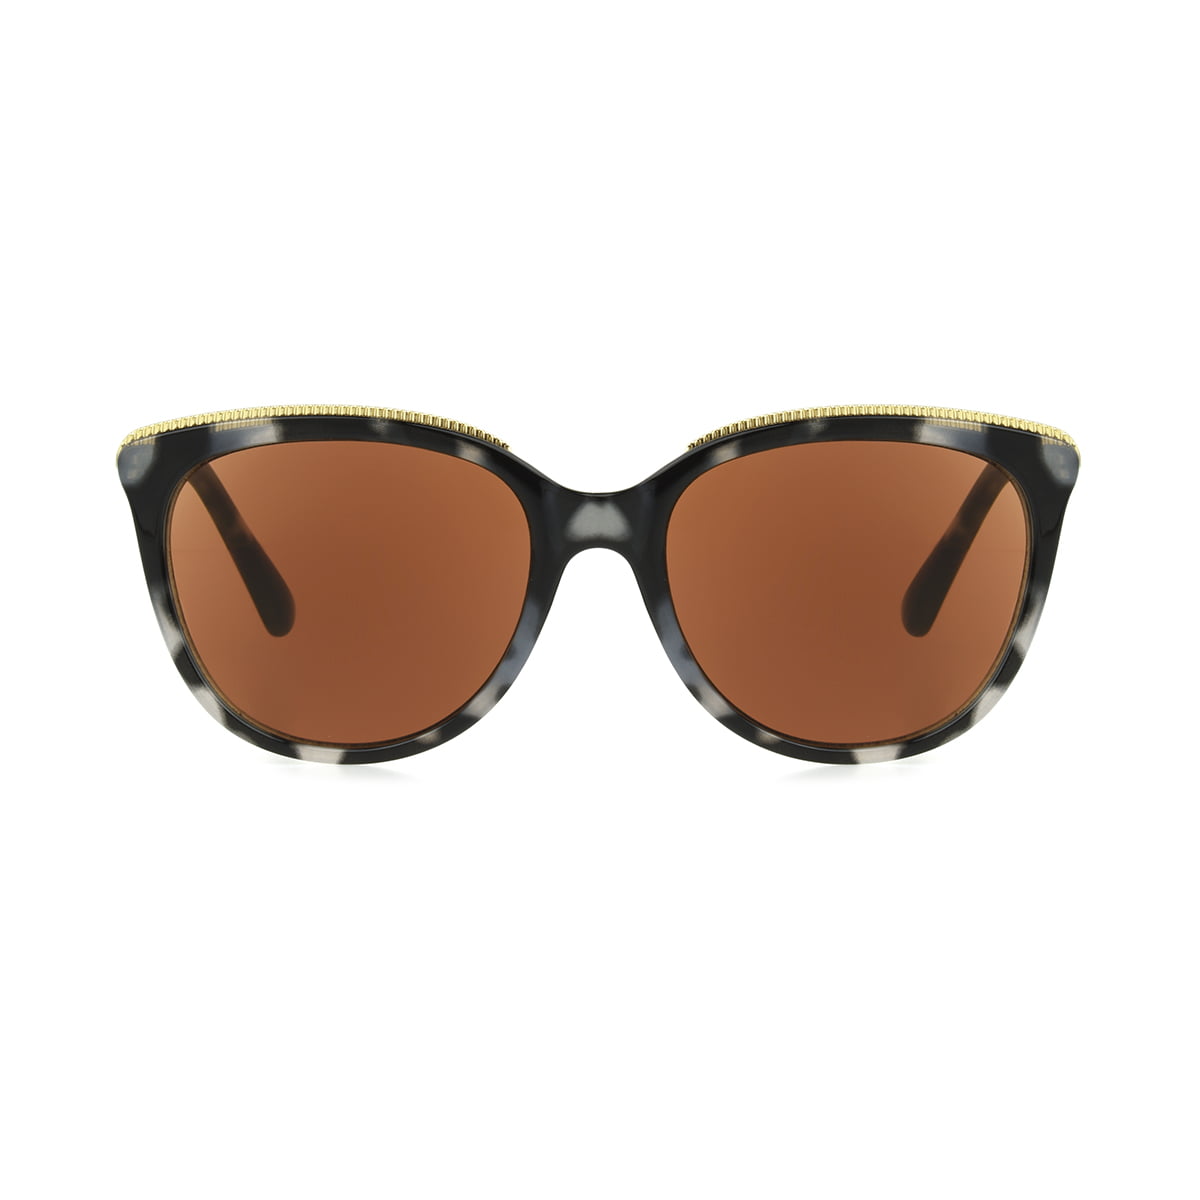 Foster Grant Smith Sunglasses